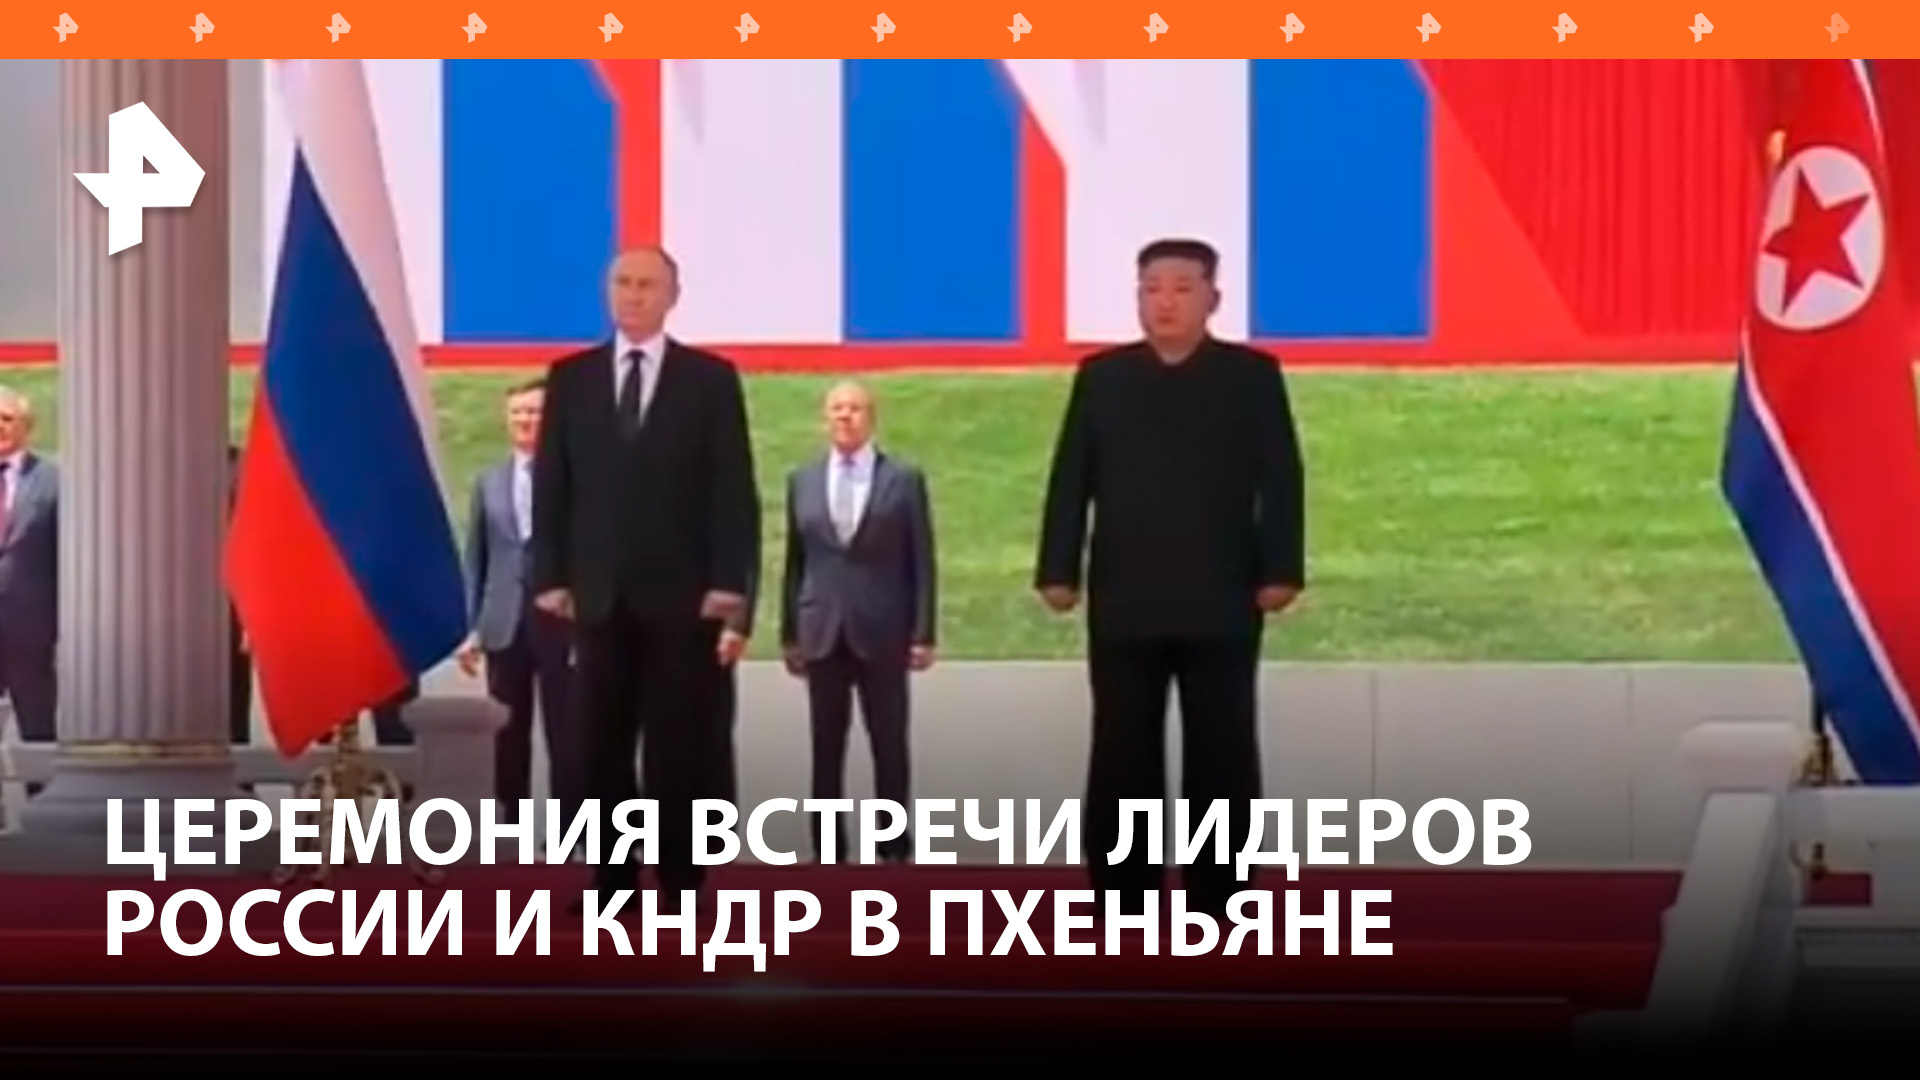 Визит Путина в Пхеньян — как праздник: глав России и КНДР встречают с цветами в руках / РЕН